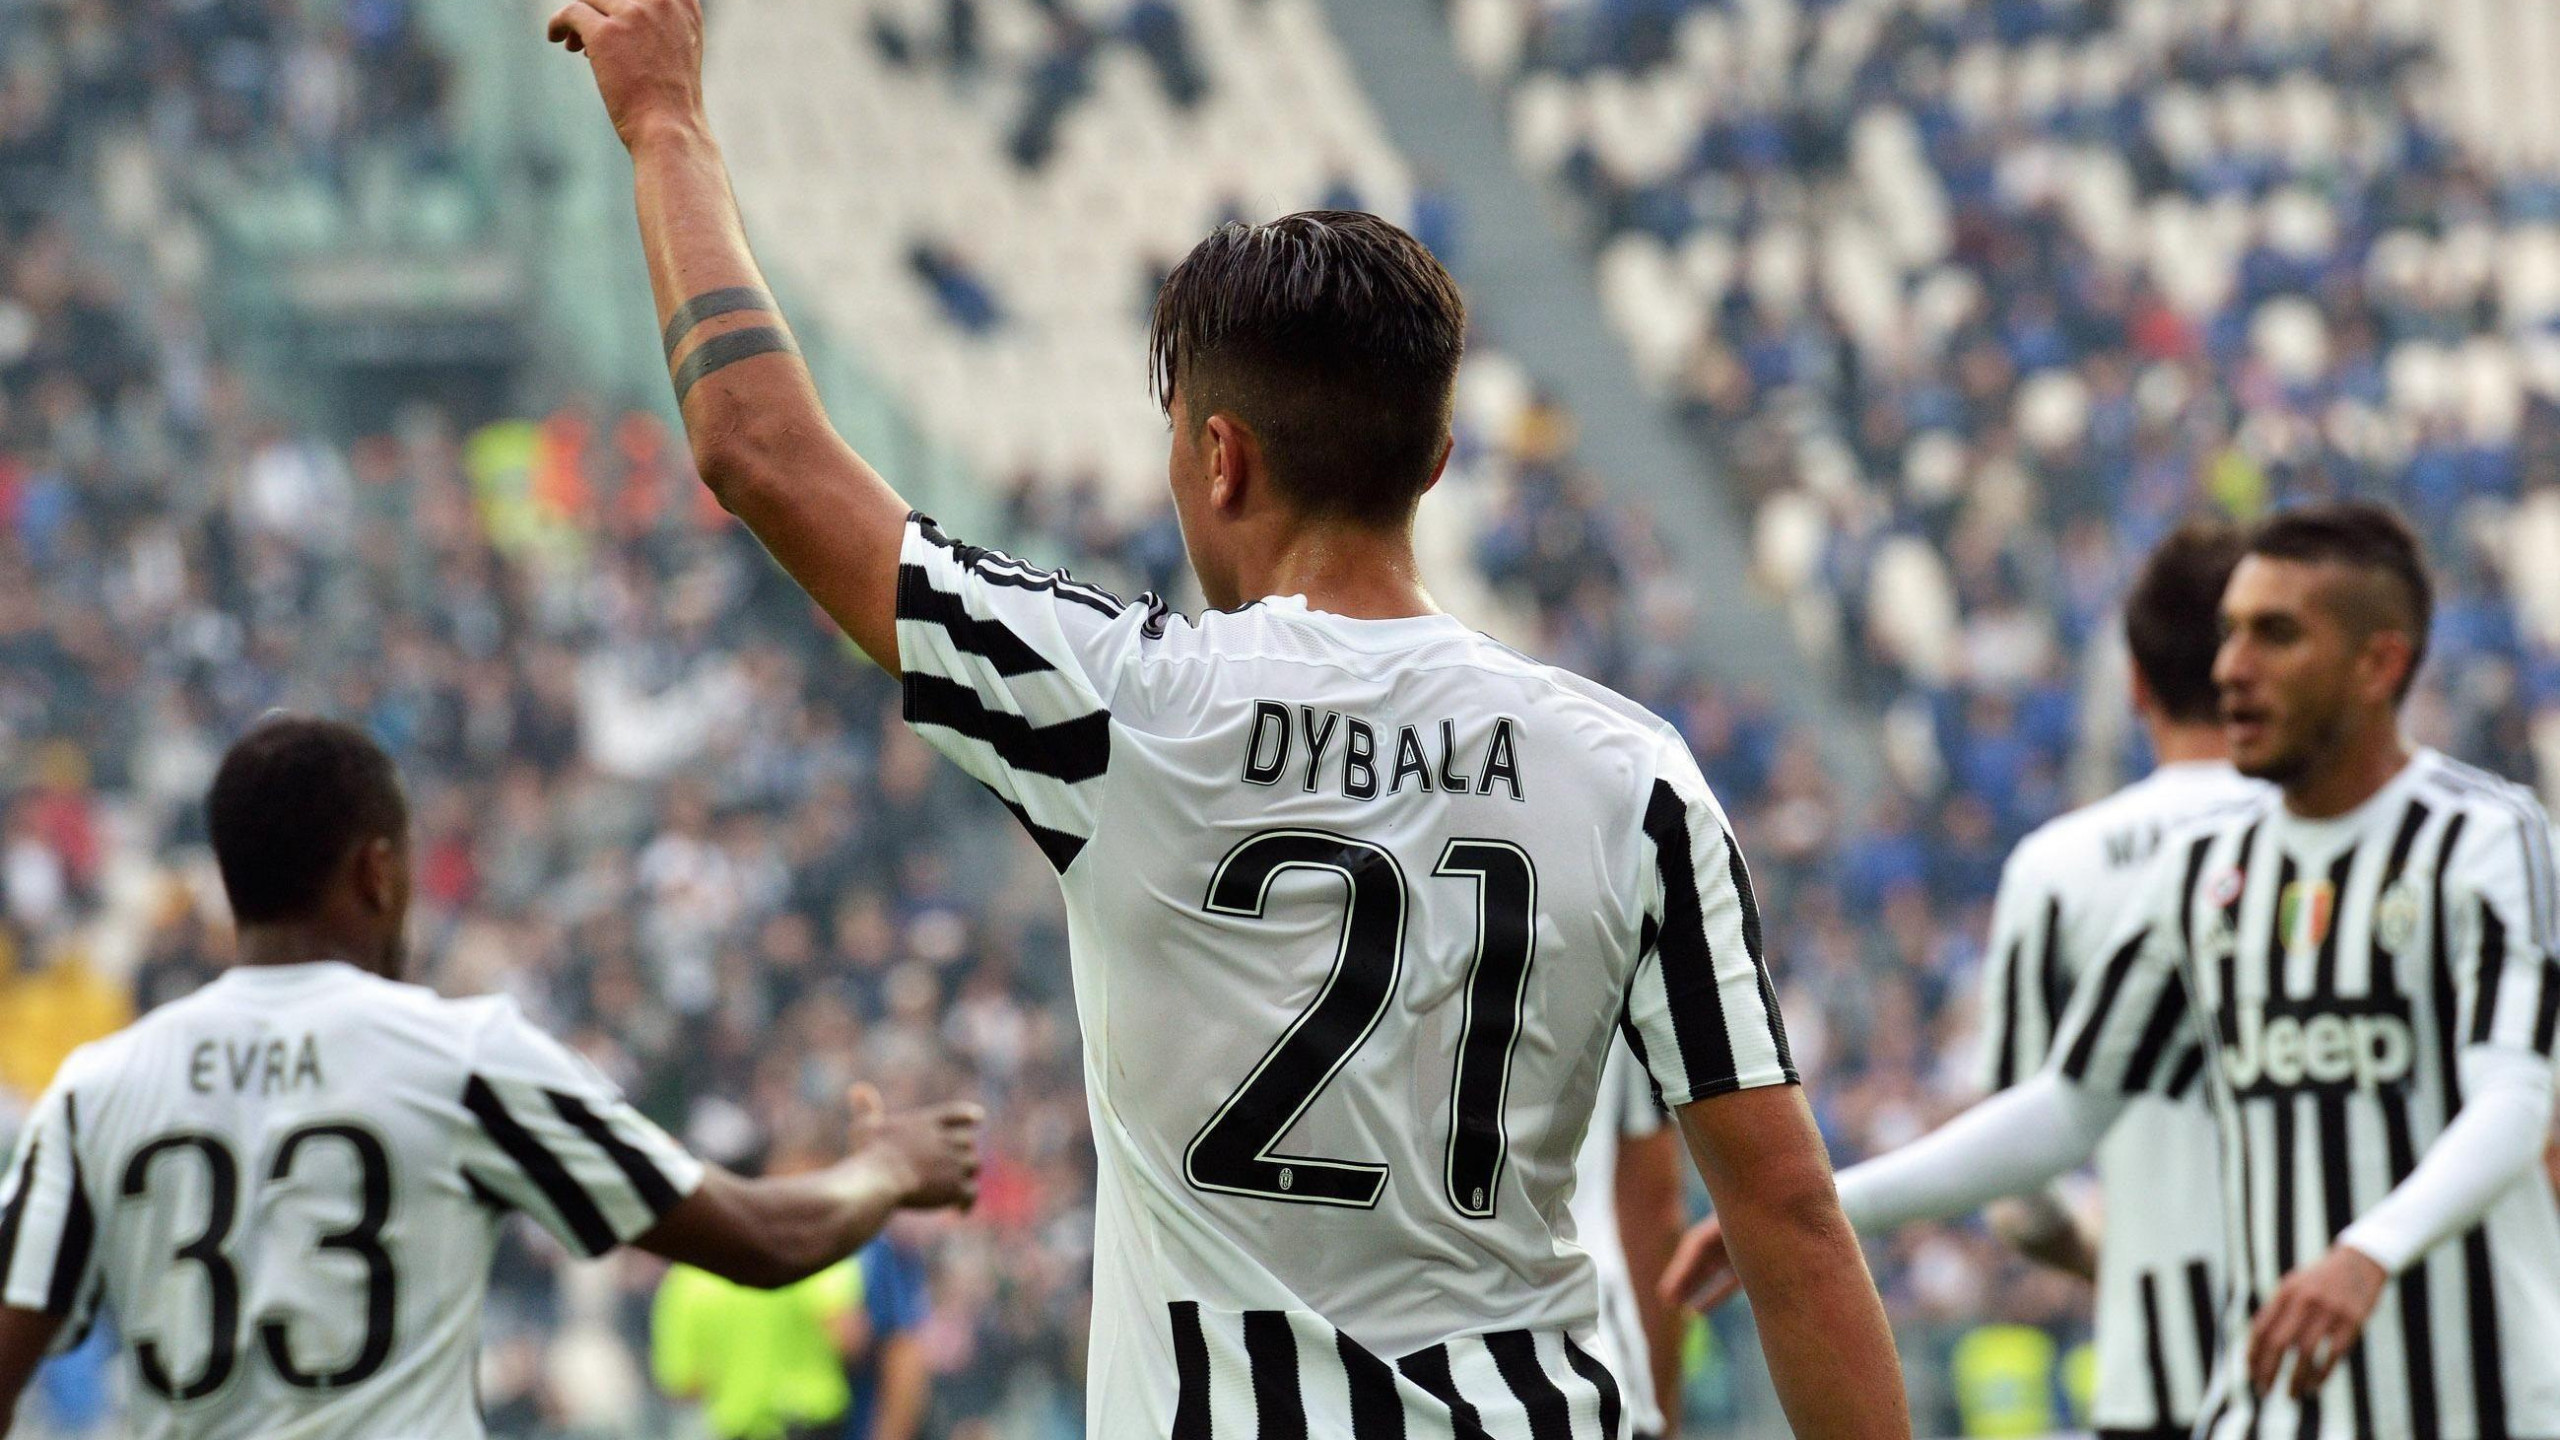 Dybala: Juventus' ninth-highest all-time goalscorer. 2560x1440 HD Wallpaper.